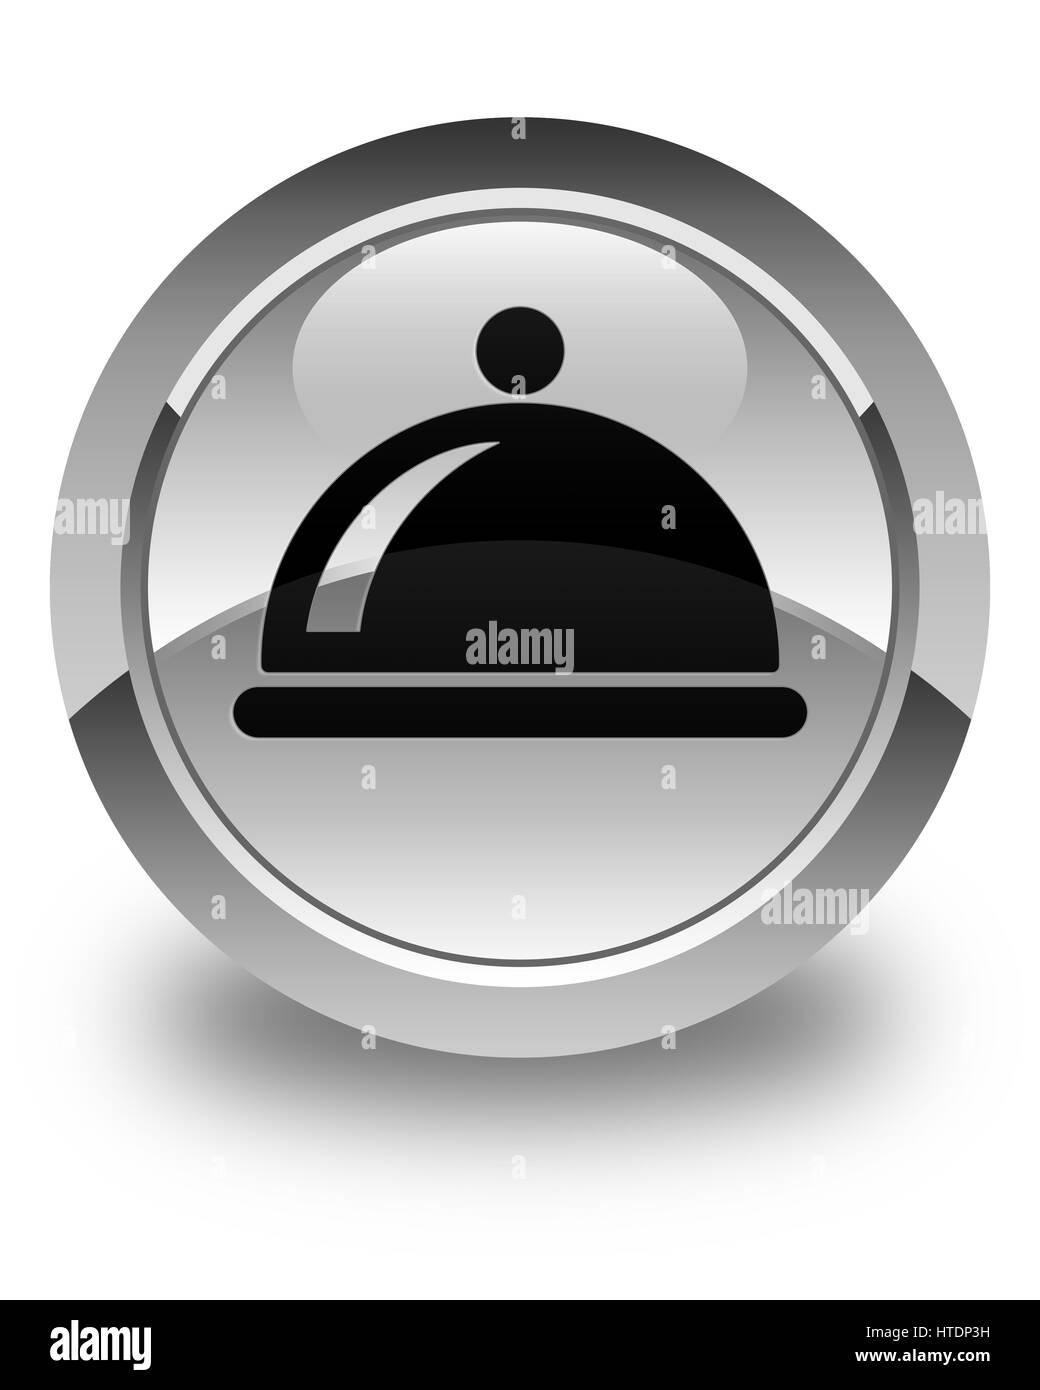 Essen-Teller-Symbol isoliert auf abstrakte Darstellung glänzend weißen runden Knopf Stockfoto